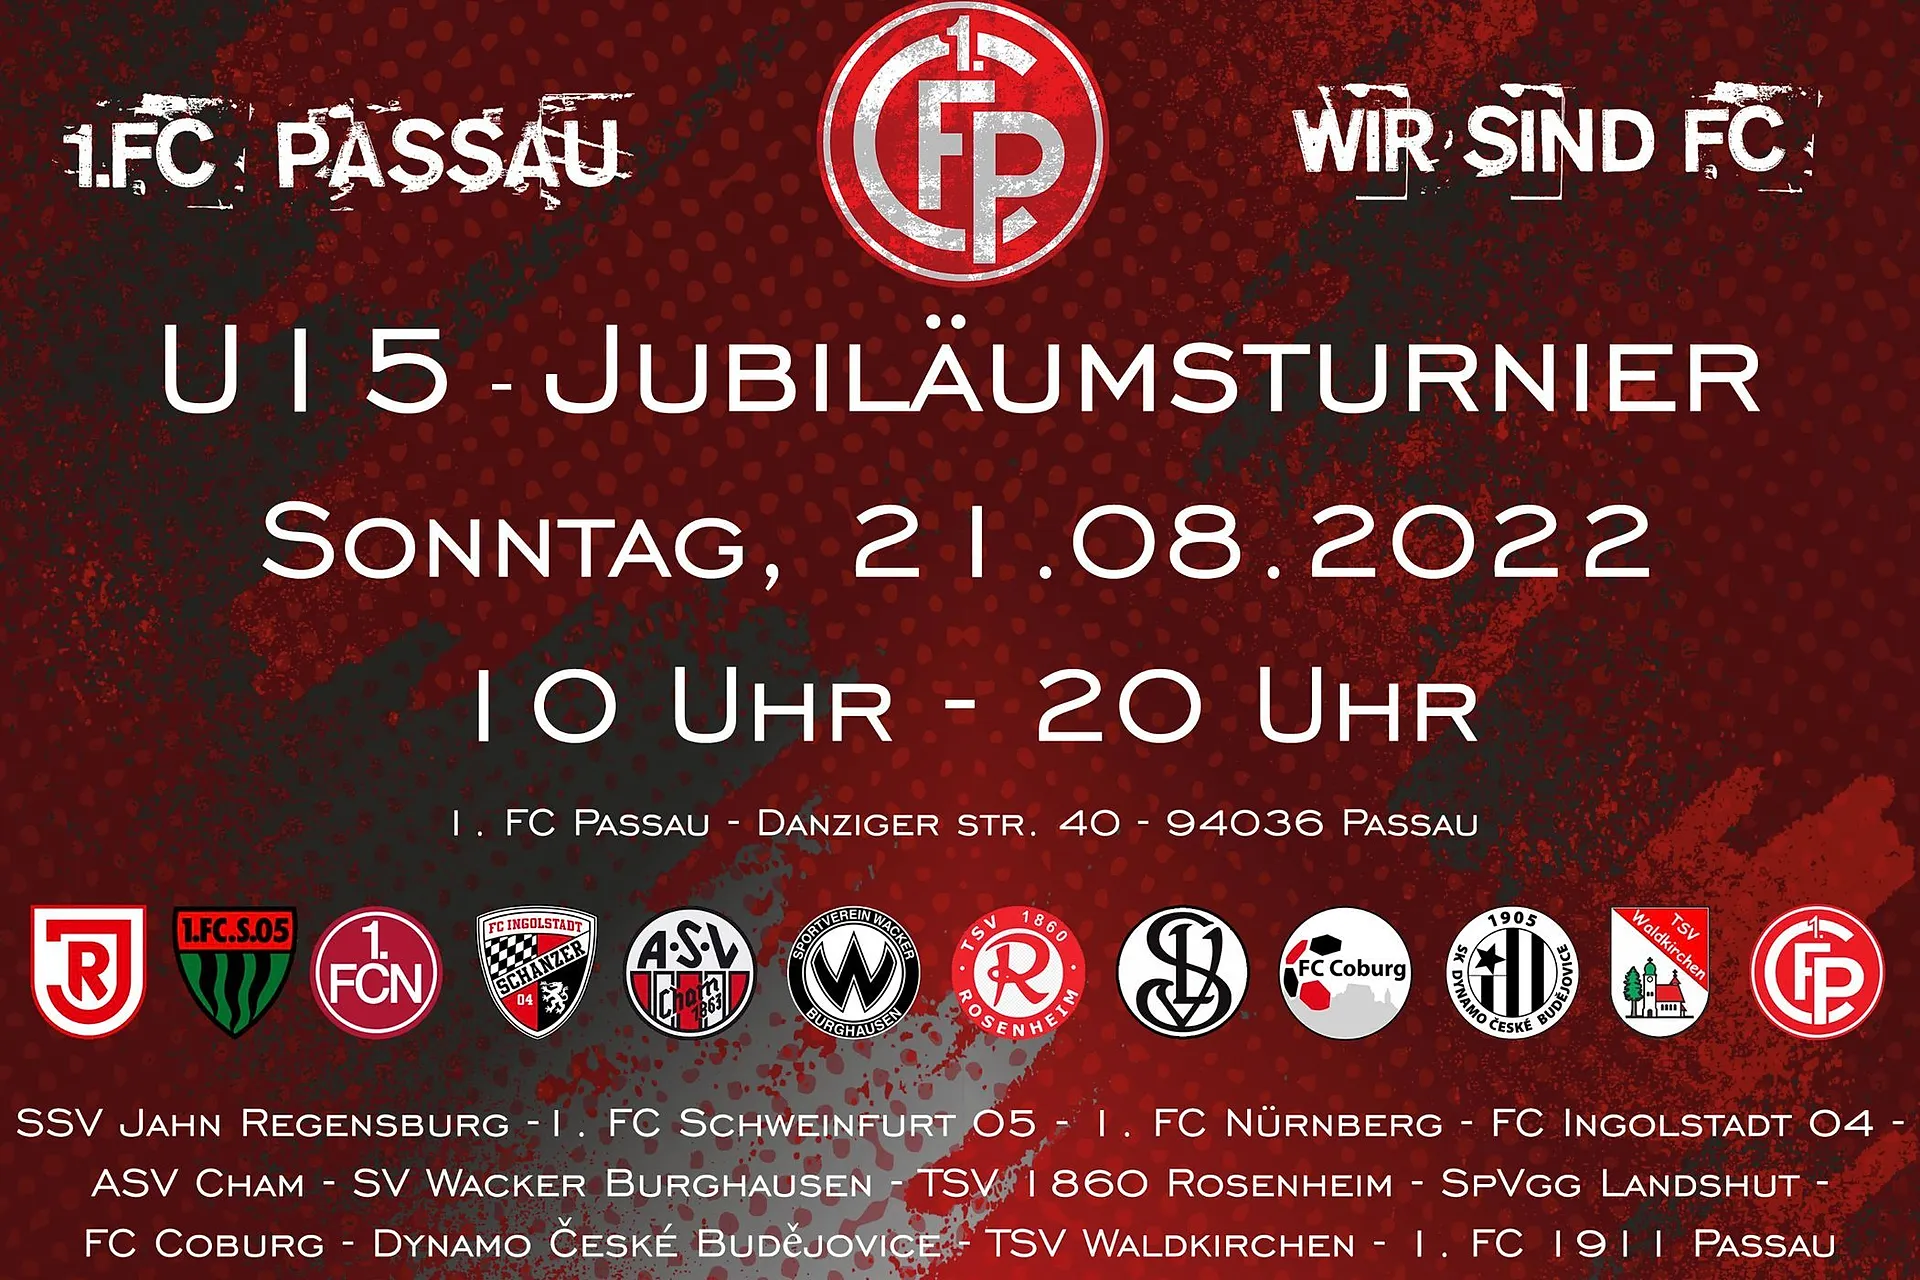 Gipfeltreffen beim U15-Jubiläumsturnier des 1.FC Passau